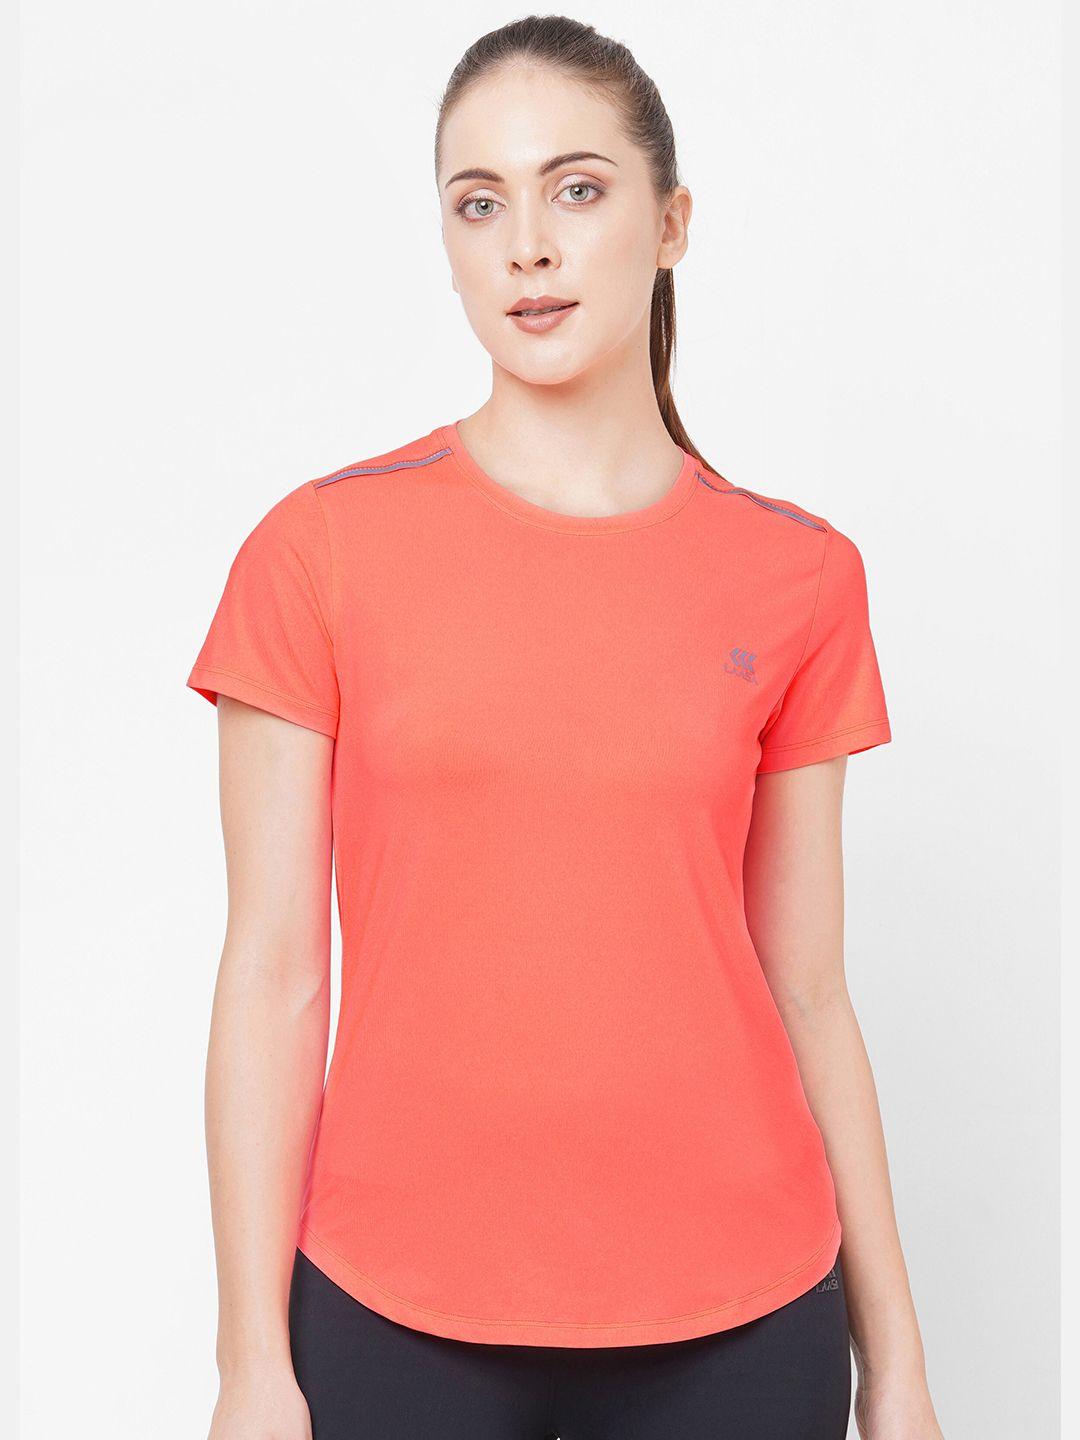 laasa sports women peach-coloured slim fit gym t-shirt